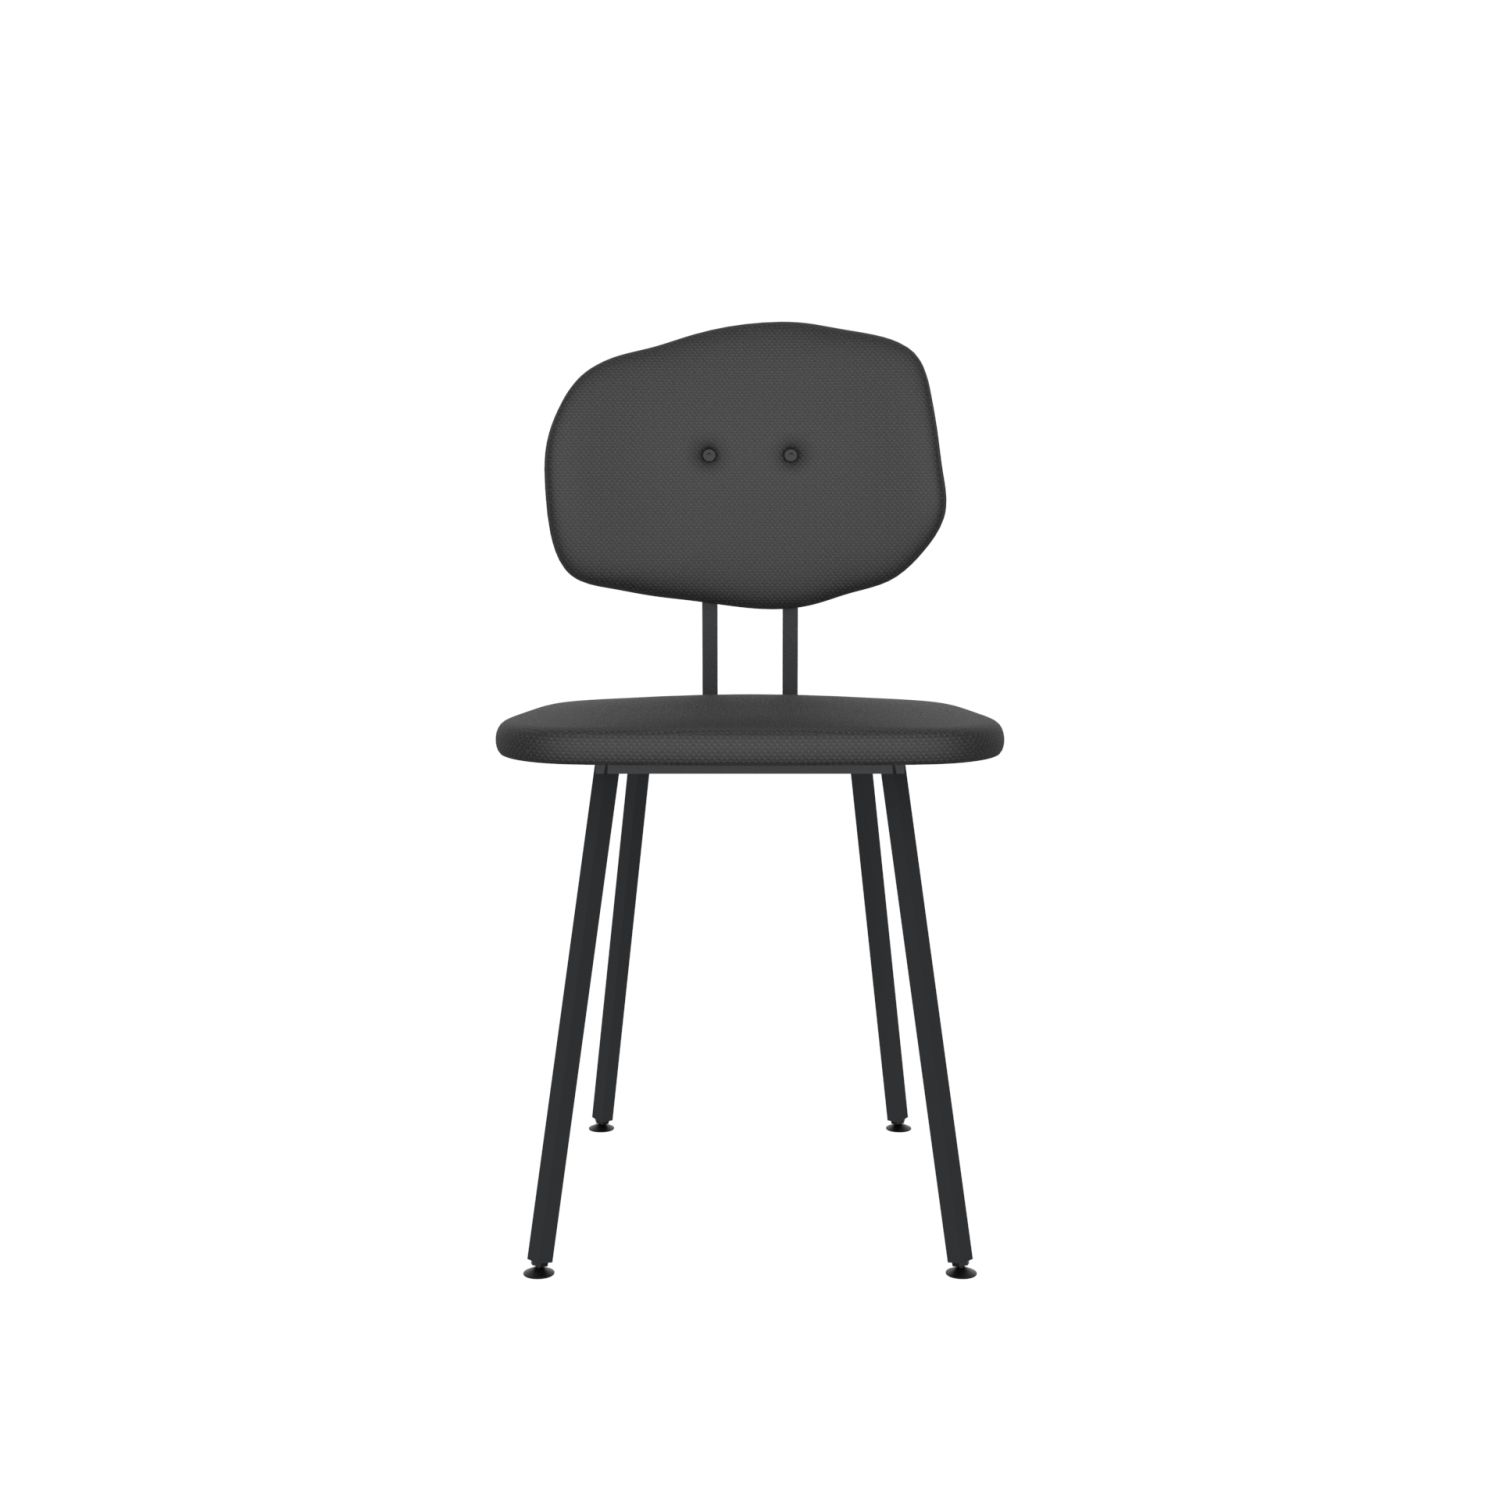 lensvelt maarten baas chair 101 not stackable without armrests backrest e havana black 090 black ral9005 hard leg ends